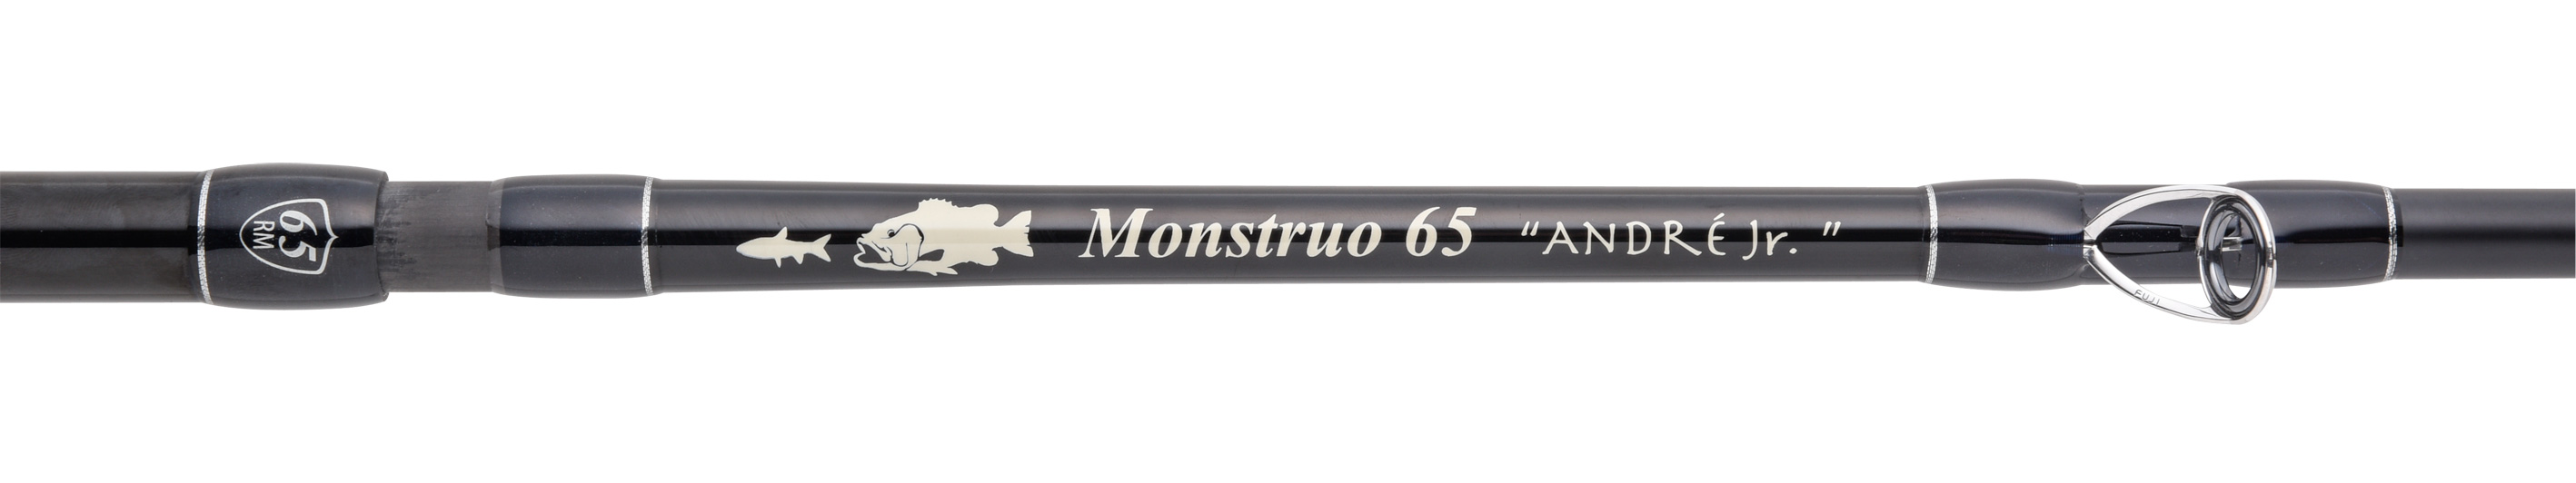 Monstruo 65-ANDRE jr. | Joint